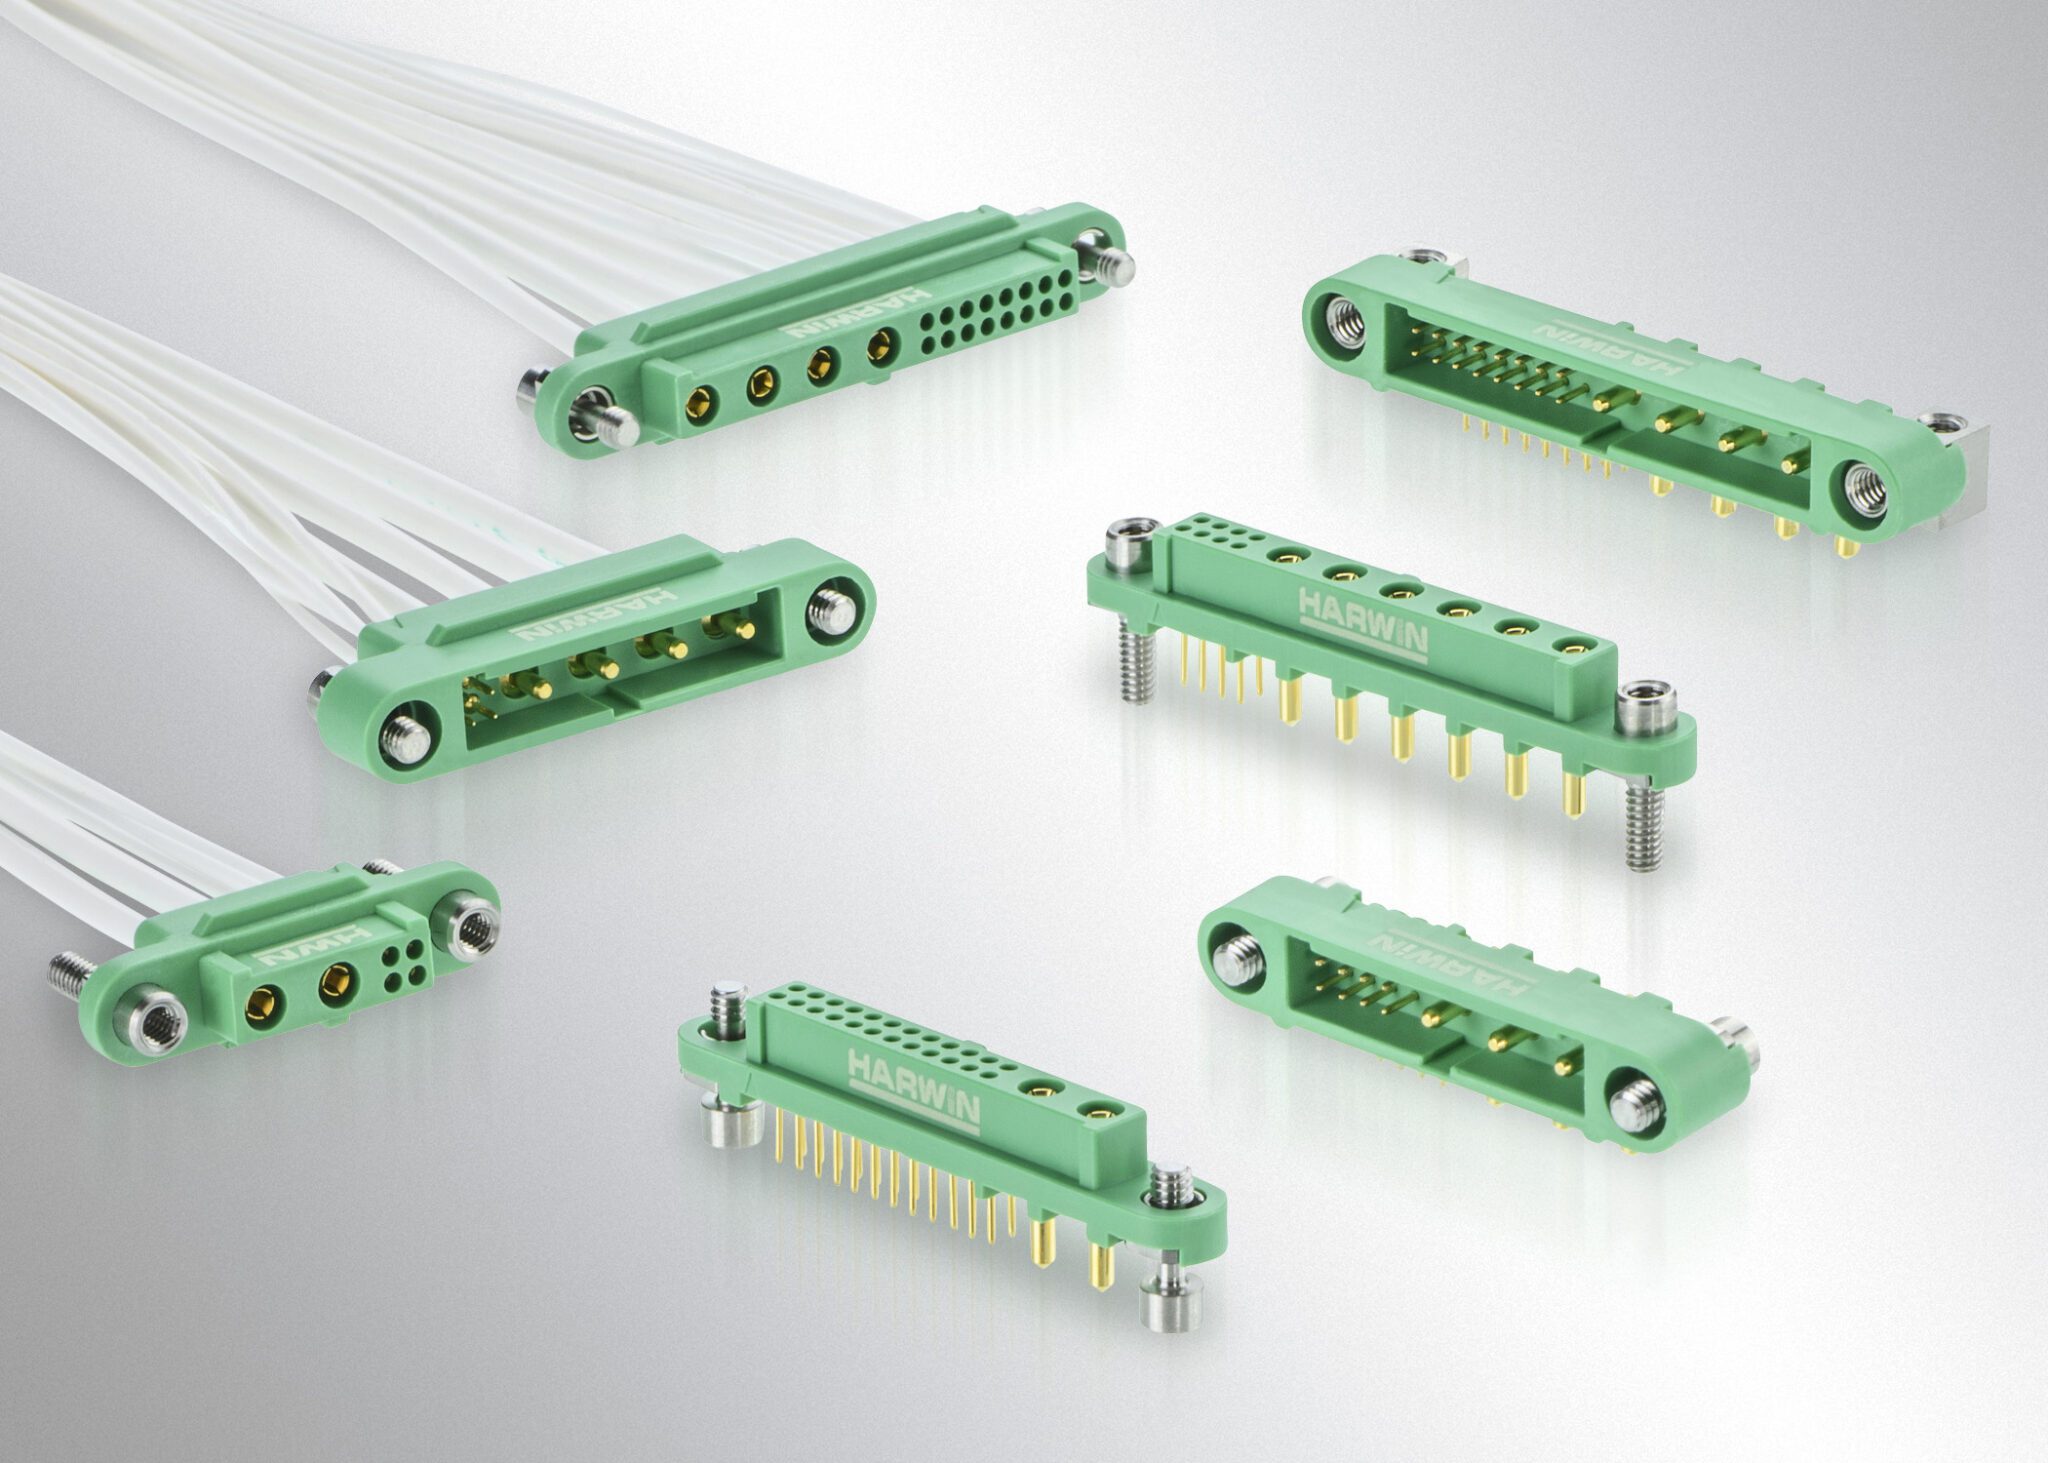 Harwin’s Gecko (G125 series) connectors